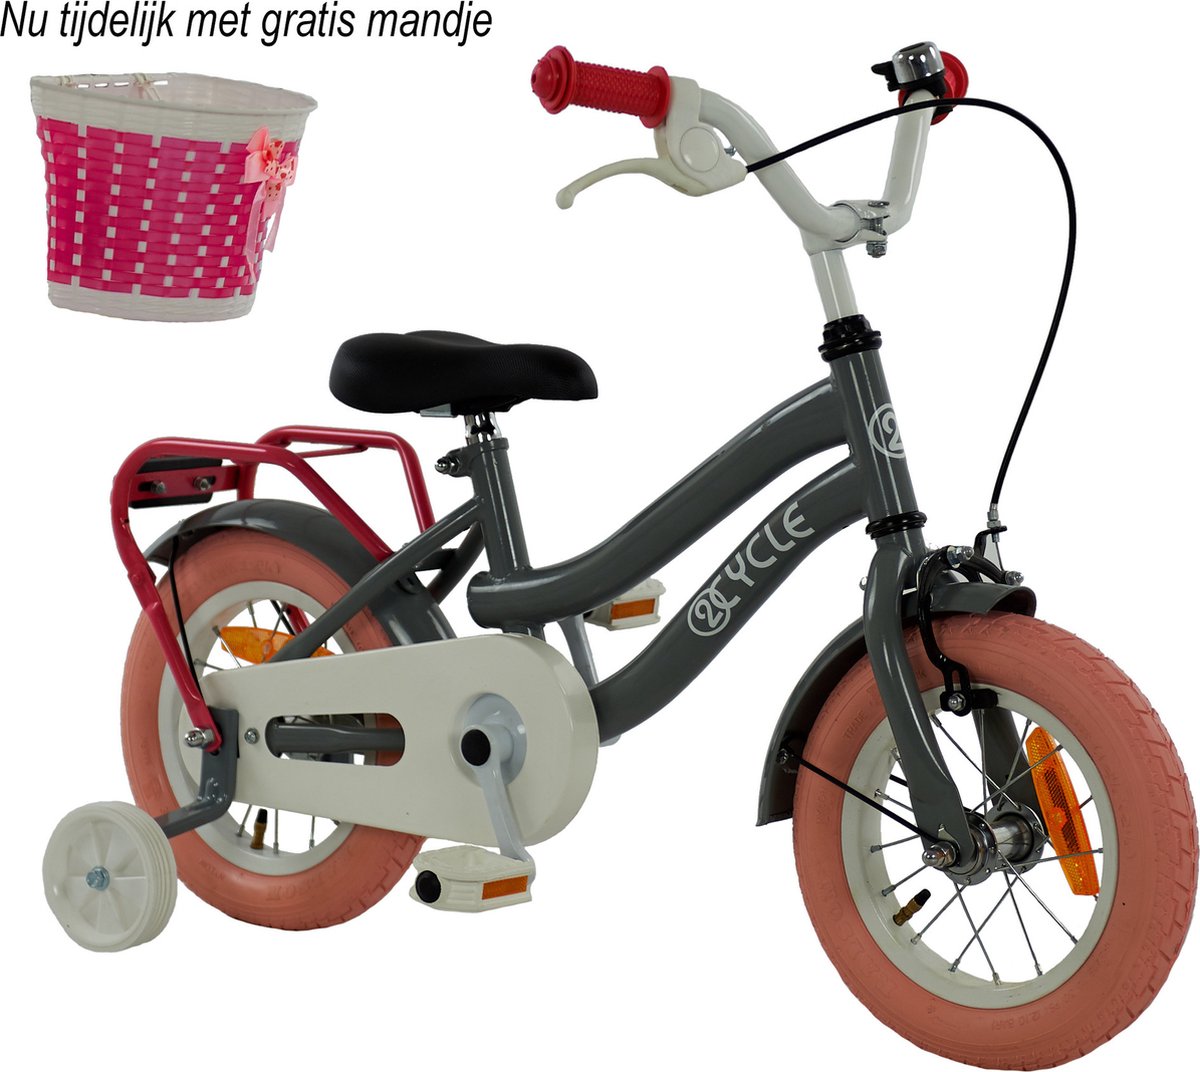 2Cycle Pretty - Kinderfiets - 12 inch - Grijs-Roze - Meisjesfiets - 12 inch fiets